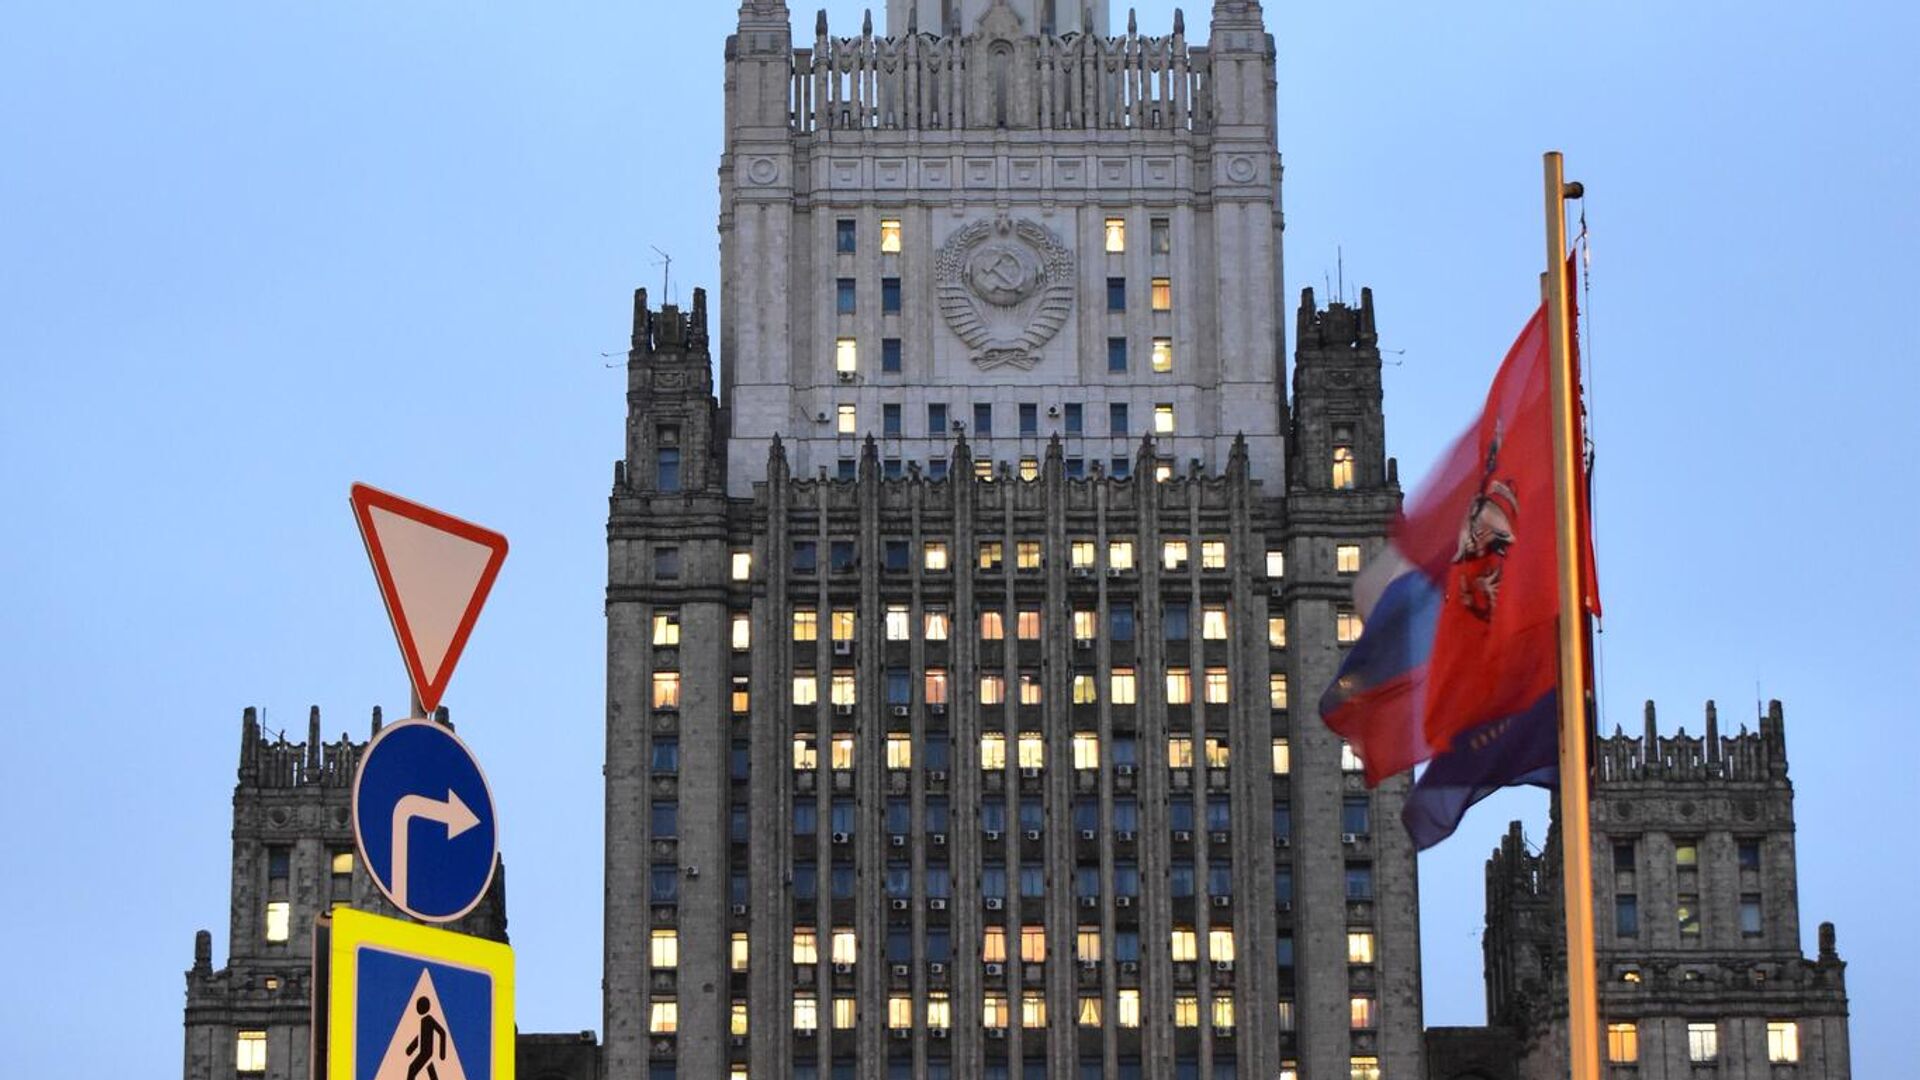 موسكو تدعو لوقف إراقة الدماء والعمليات العسكرية في ناغورني  قرة باغ